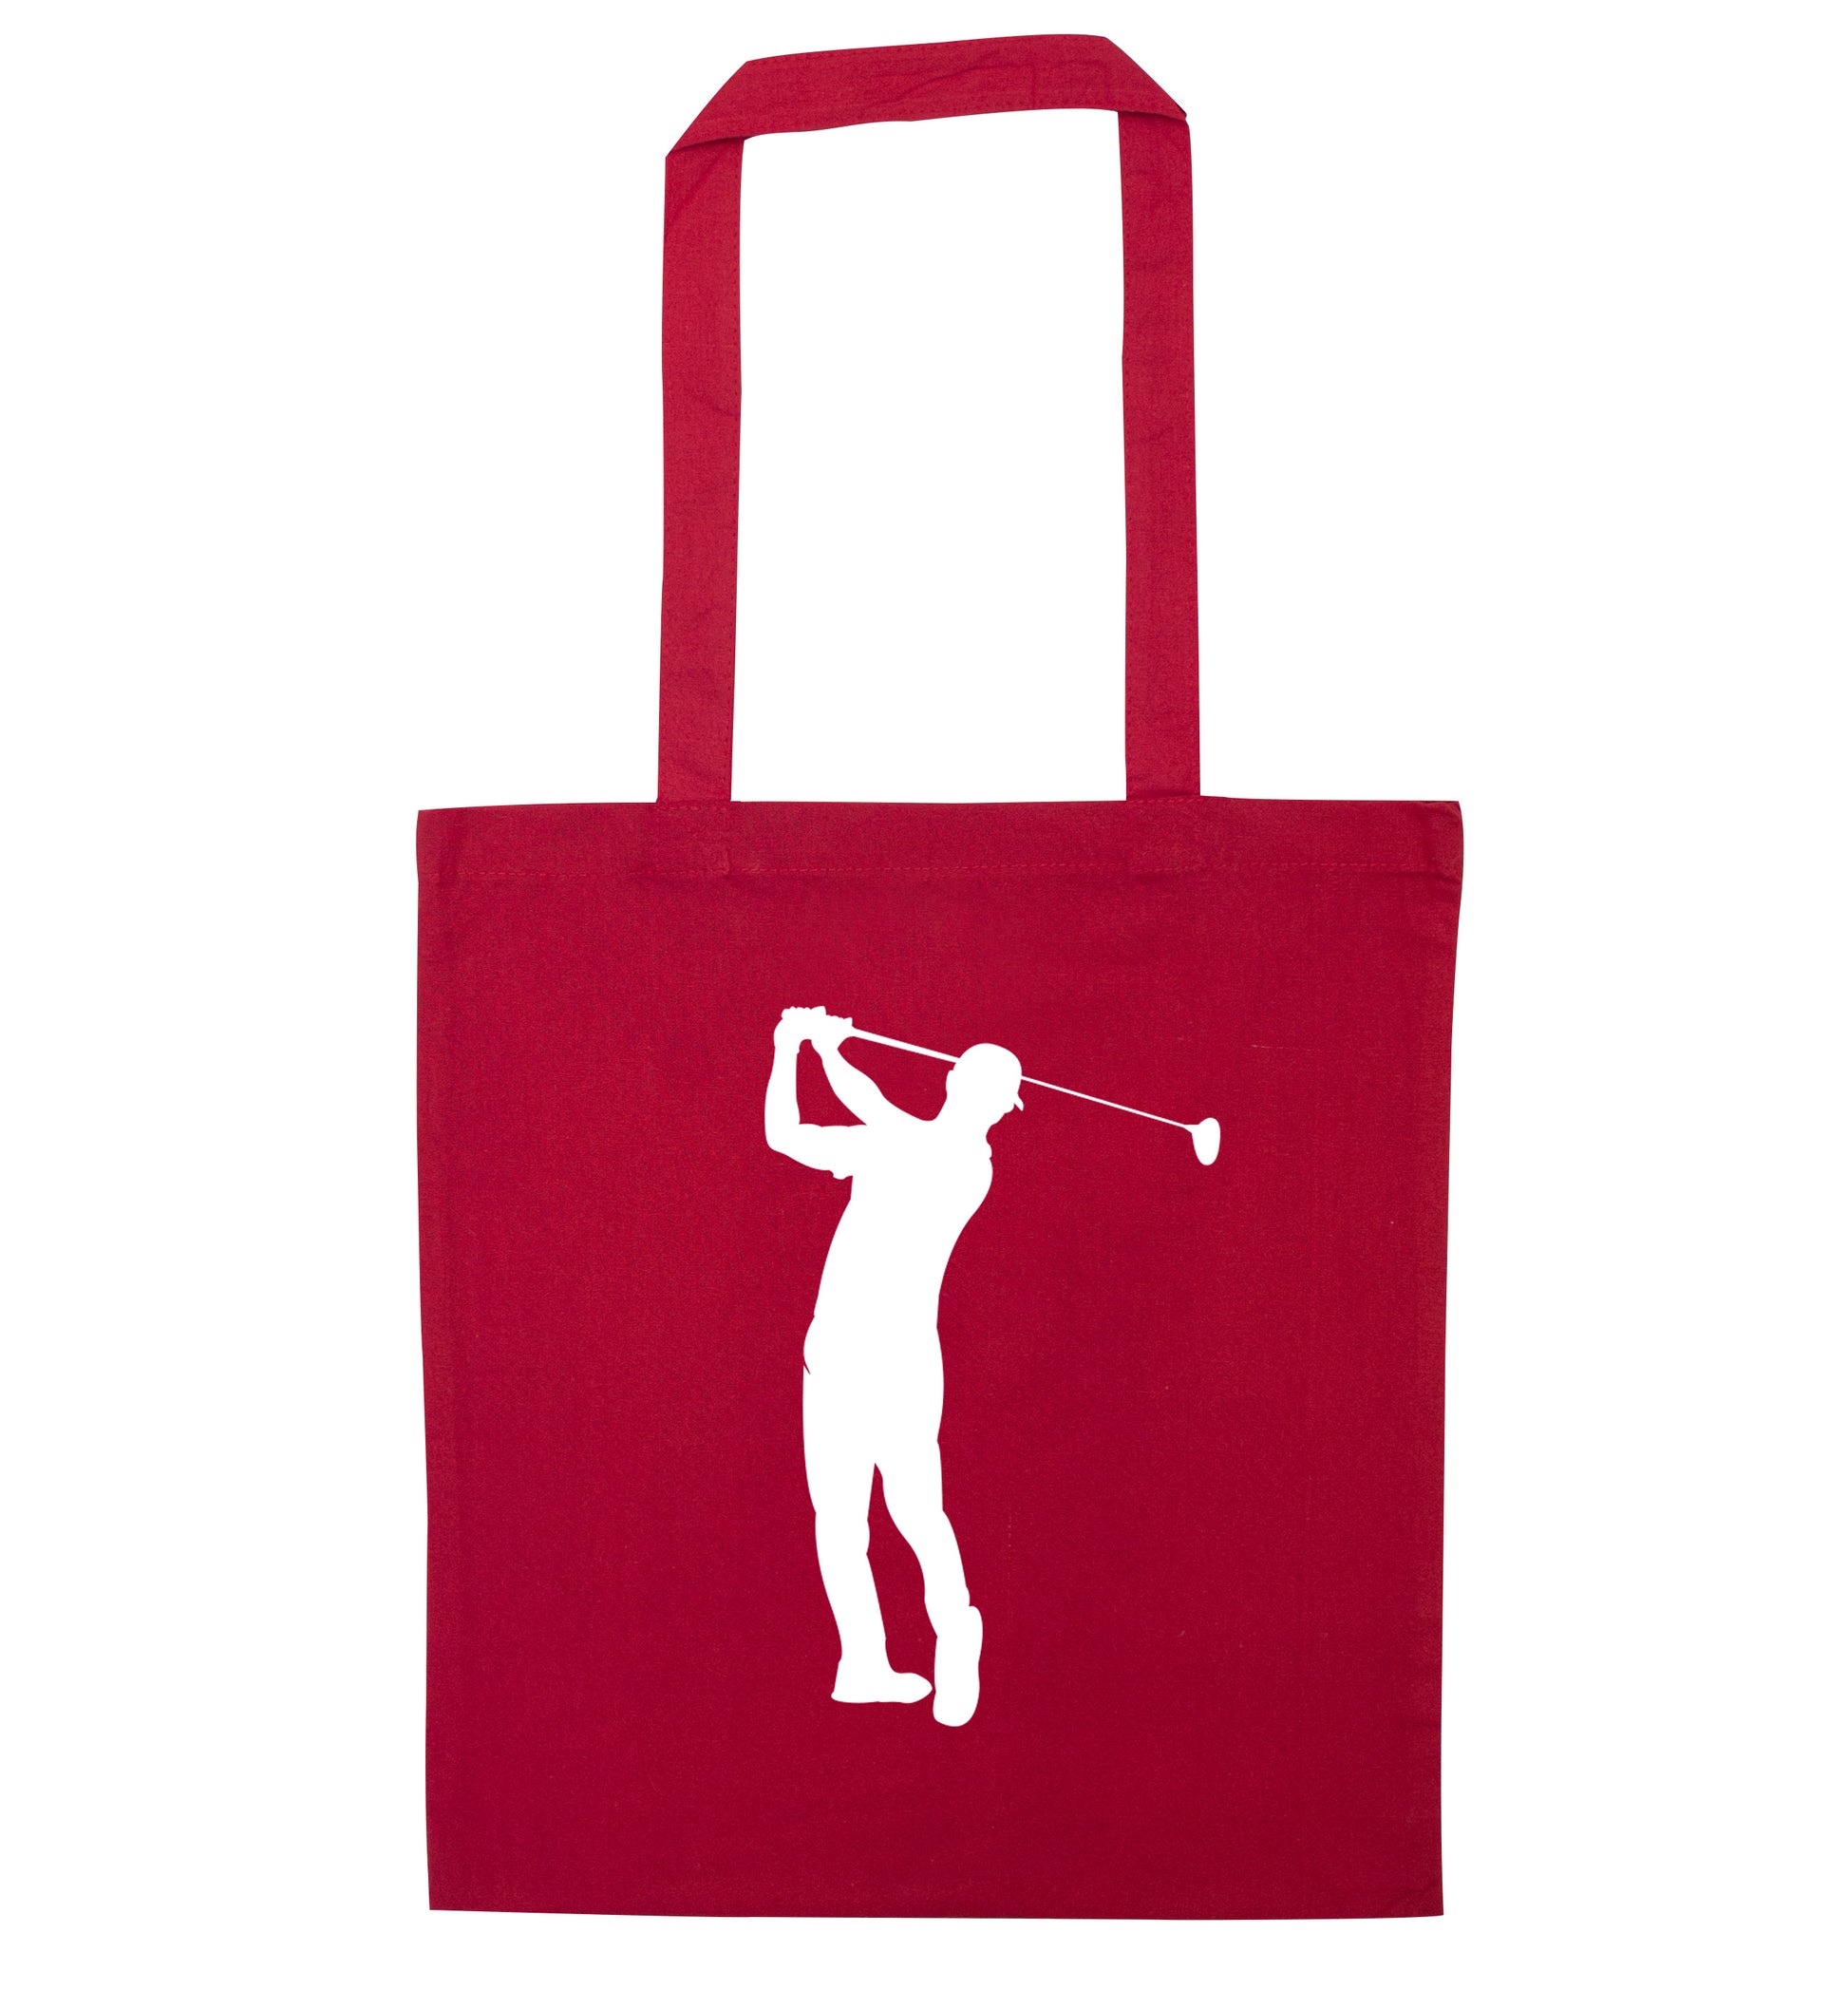 Golfer Illustration red tote bag